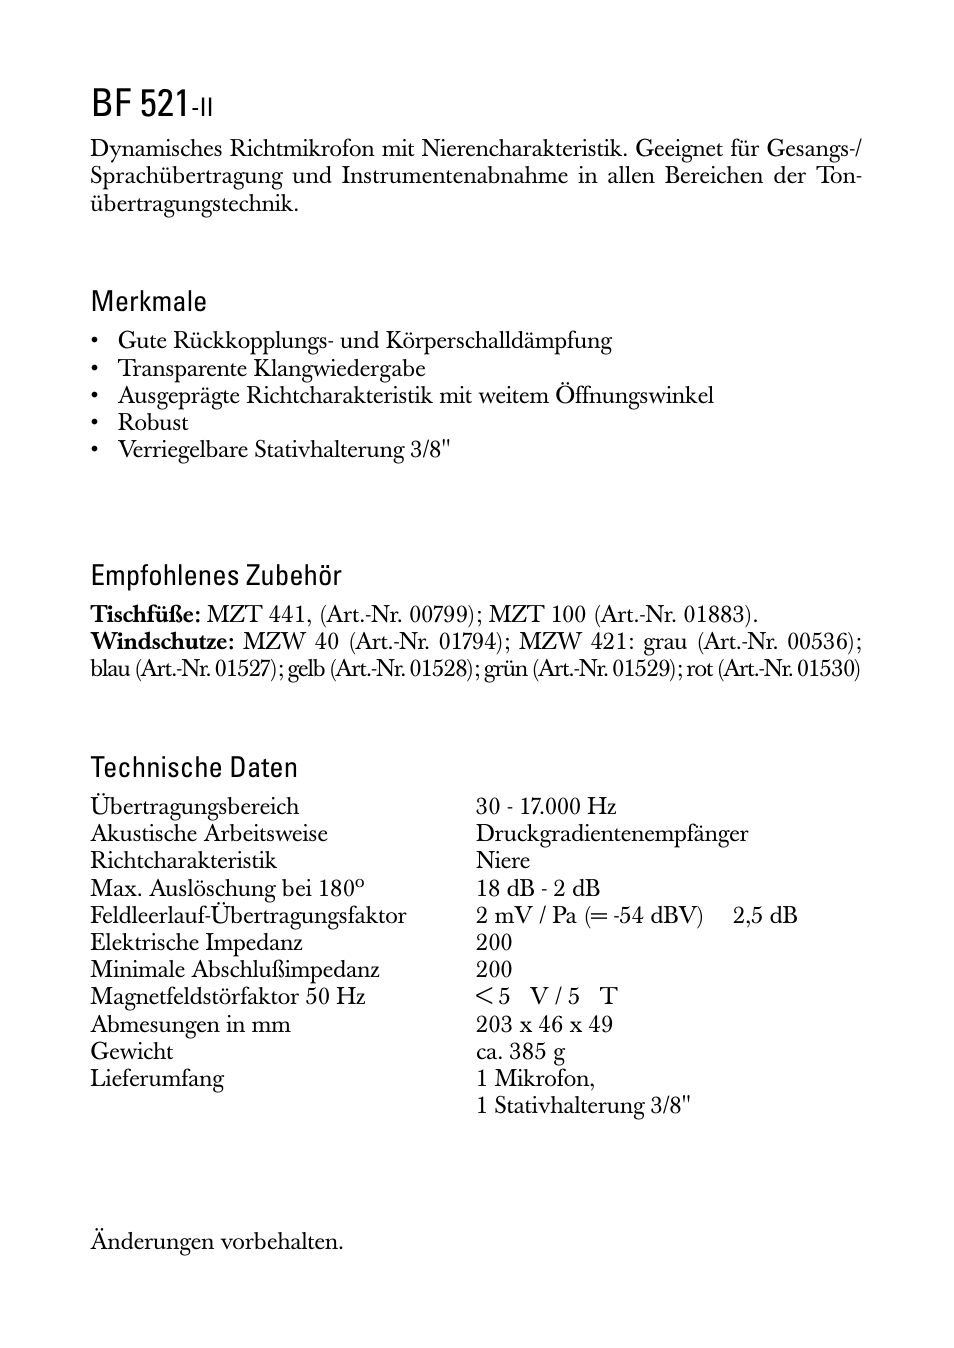 Gebrauchsanleitung, Bf 521, Merkmale | Empfohlenes zubehör, Technische daten | Sennheiser BF 521-II User Manual | Page 2 / 12